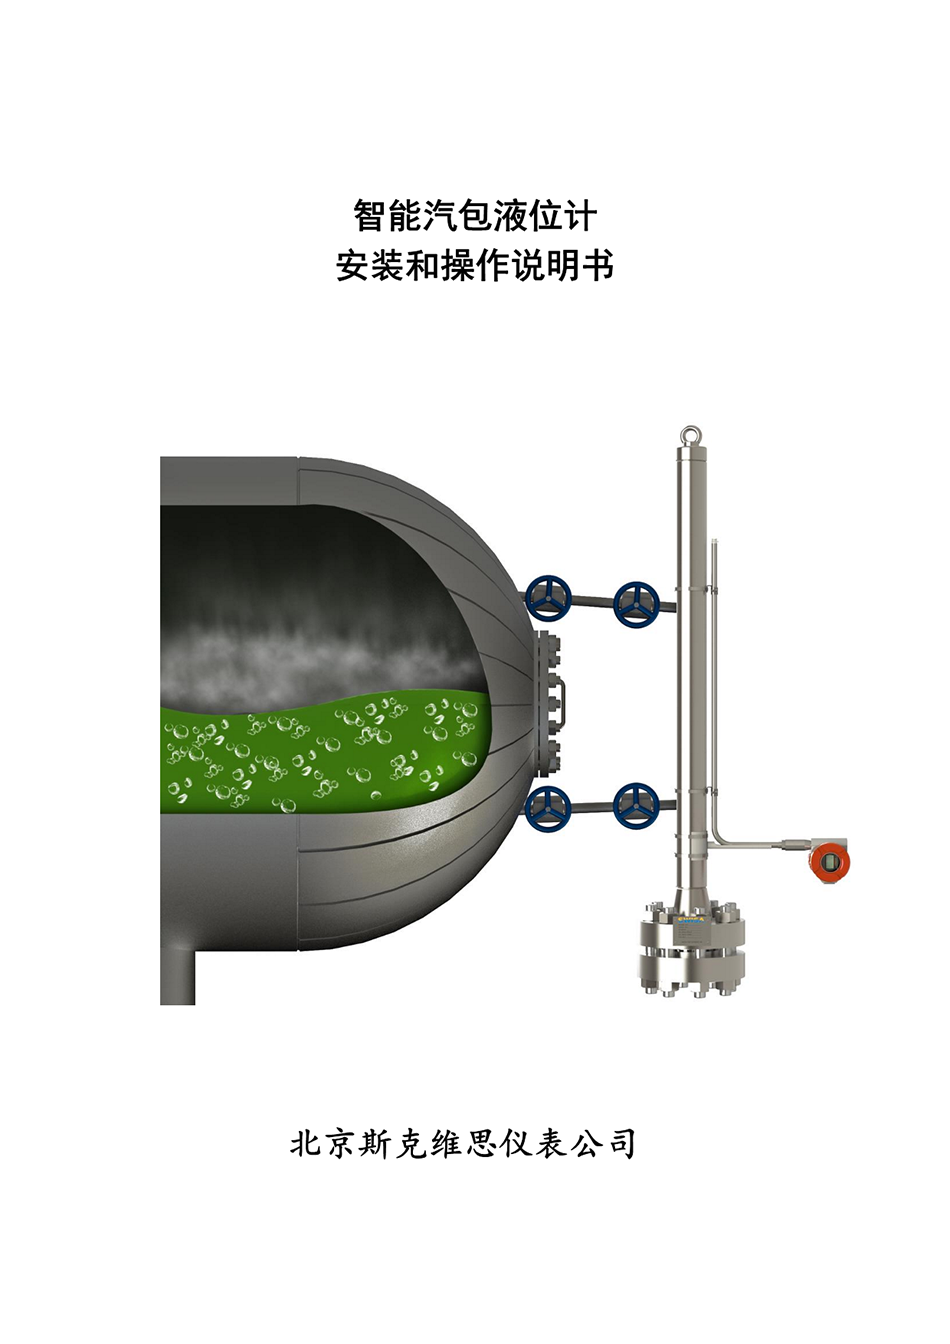 北京MAG智能汽包液位计安装和操作说明书